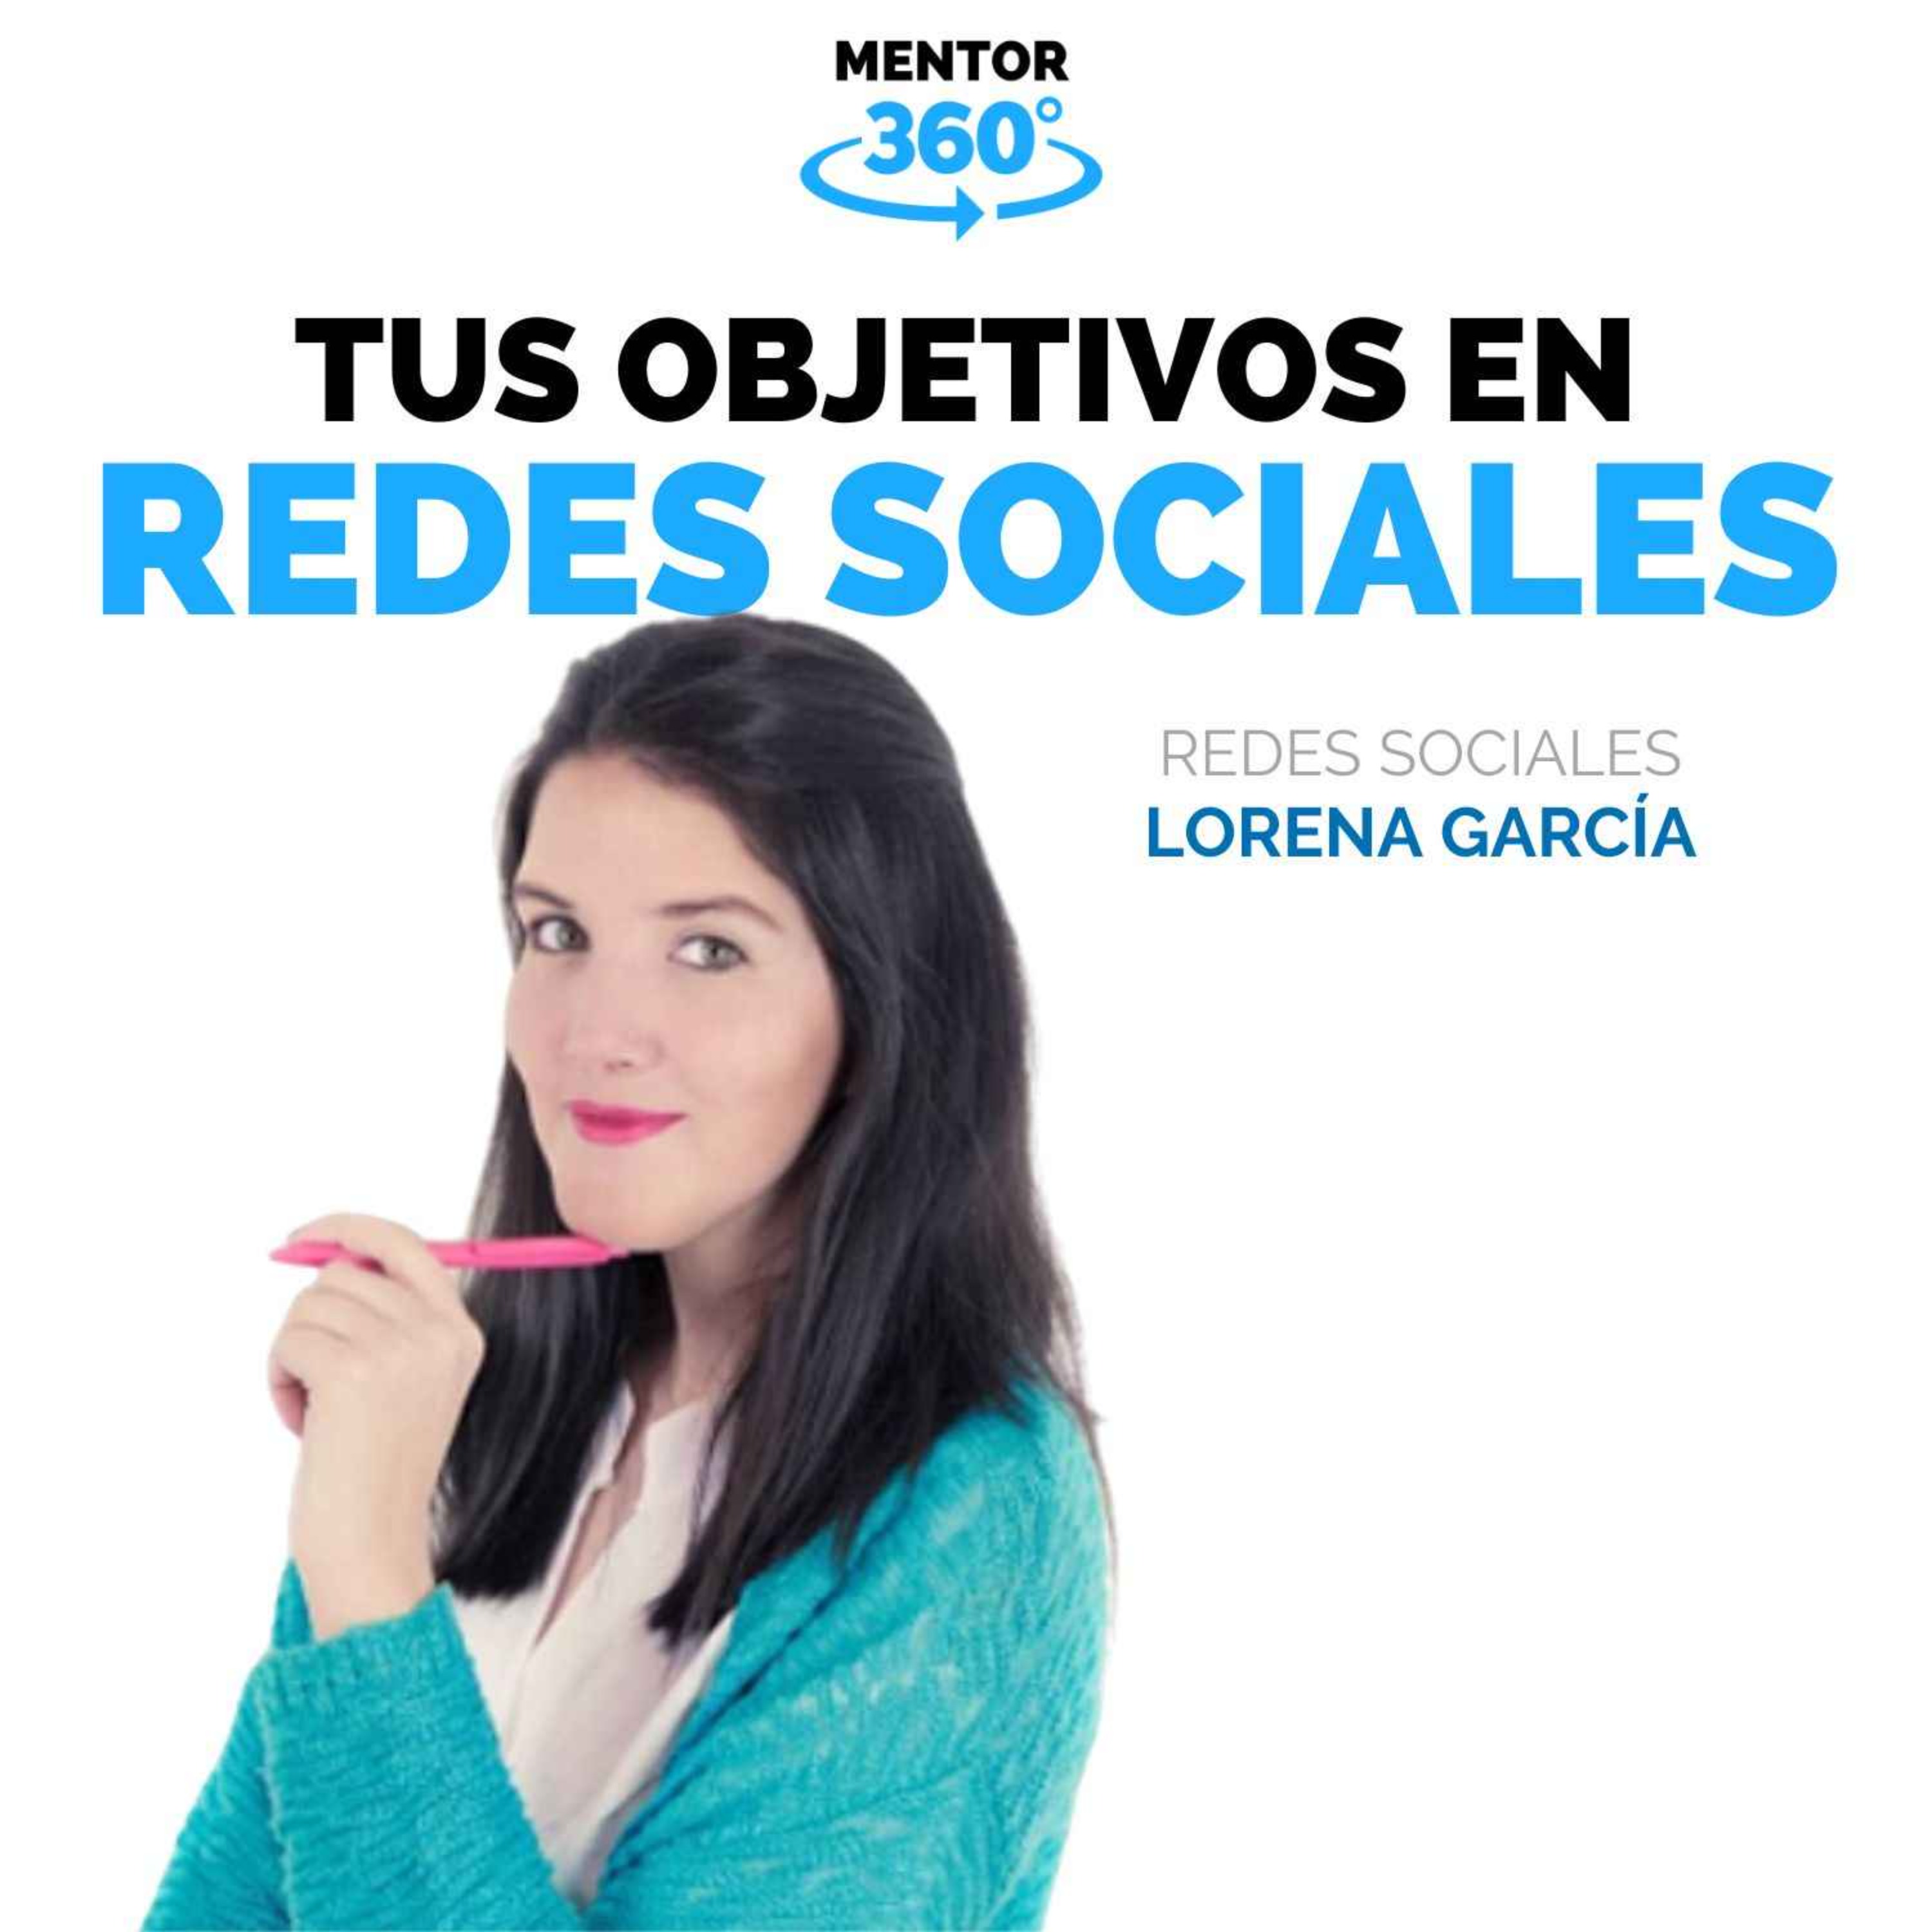 Tus Objetivos en Redes Sociales - Lorena García - Redes Sociales - MENTOR360